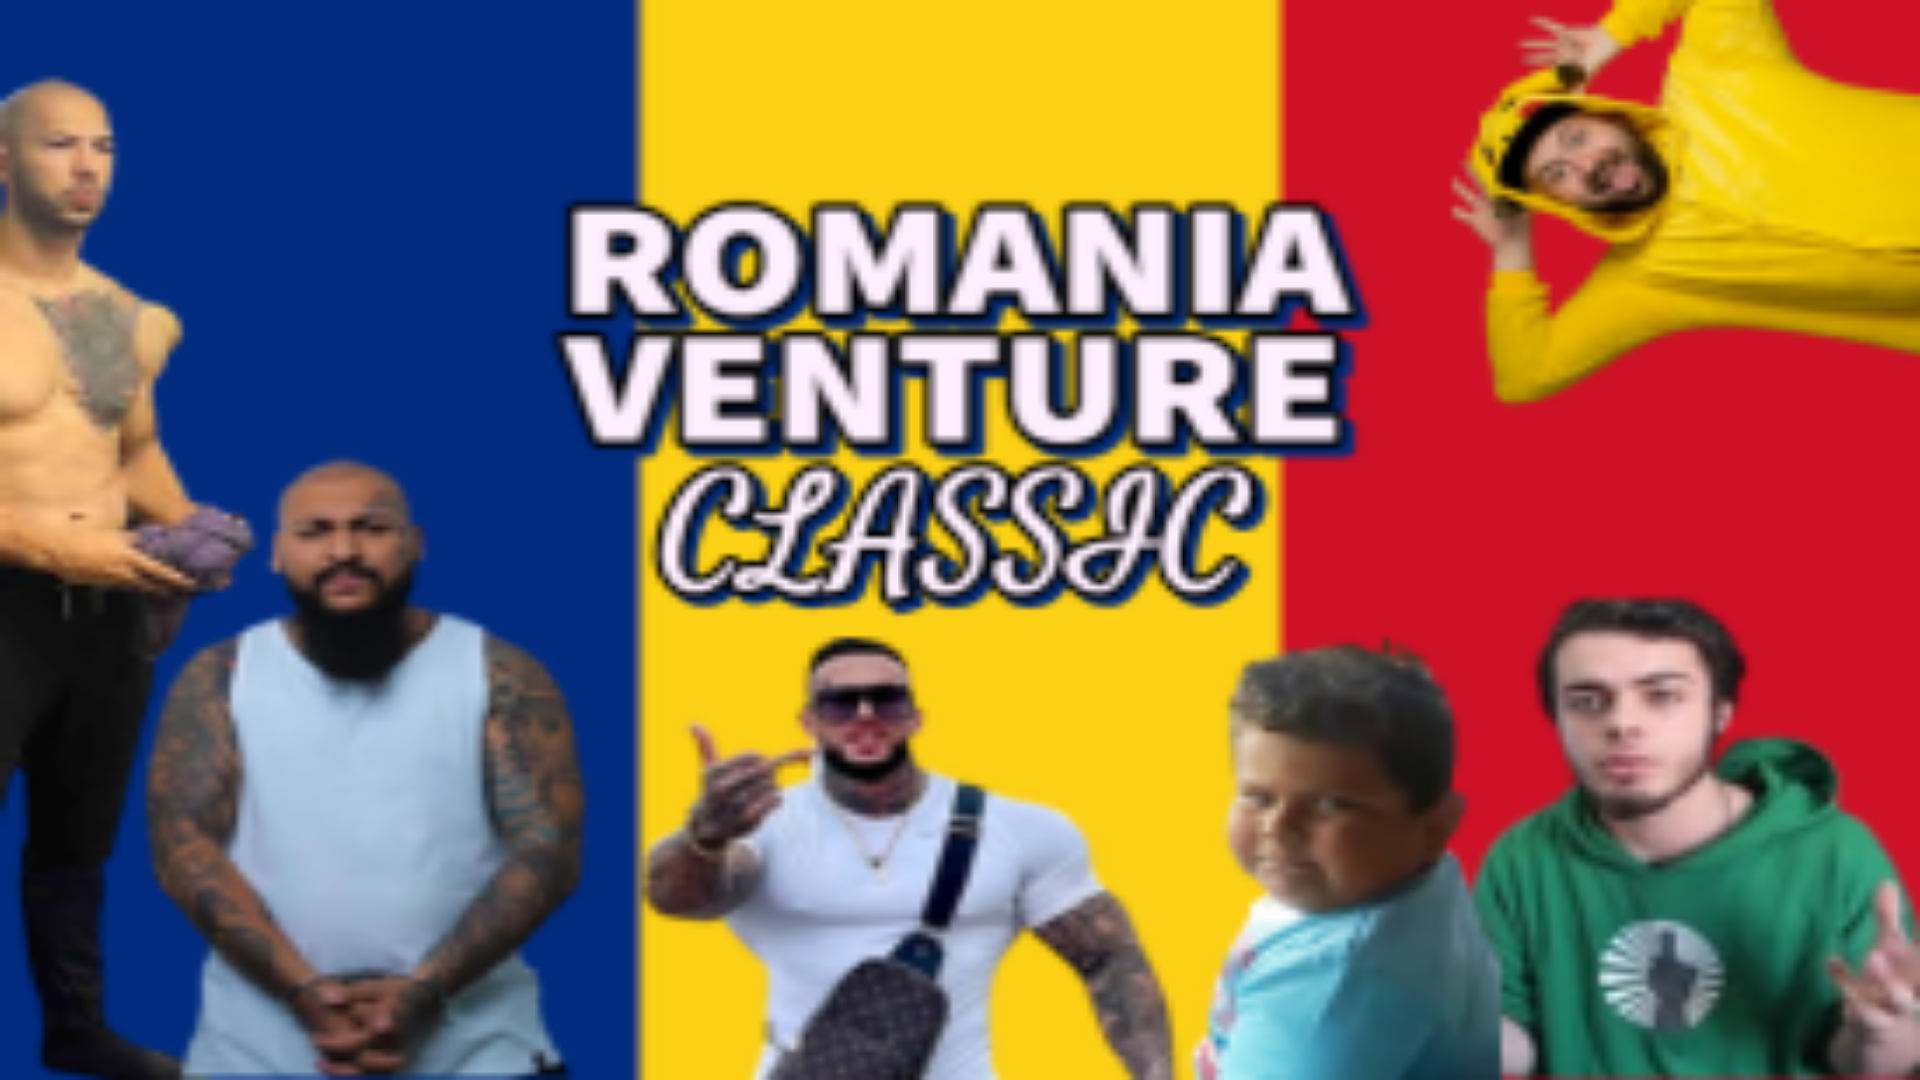 Romania Venture Classic